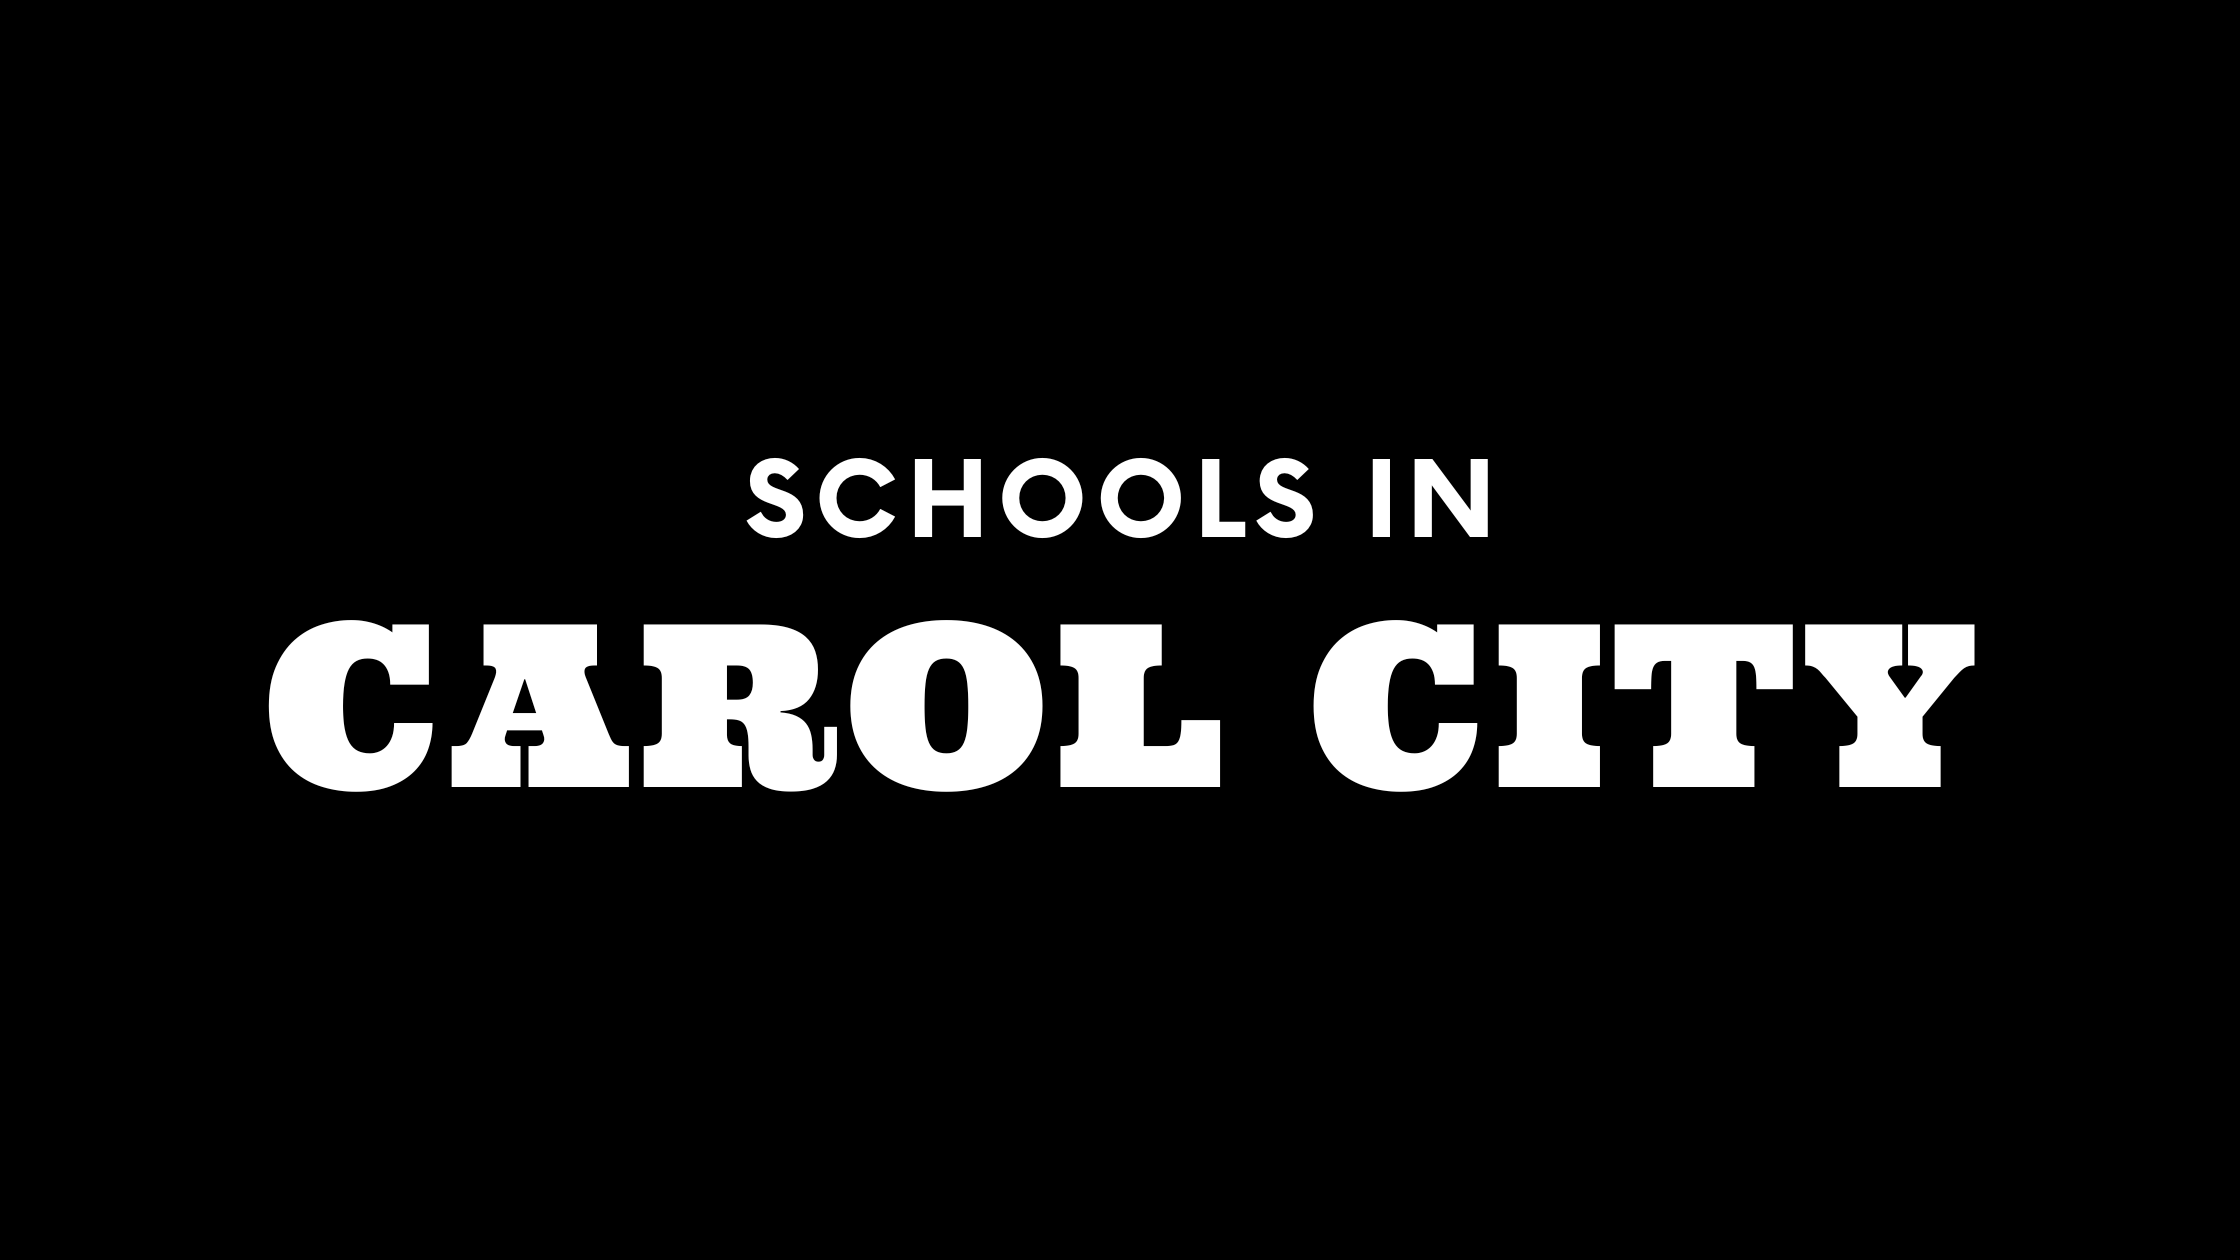 Schools in Carol City